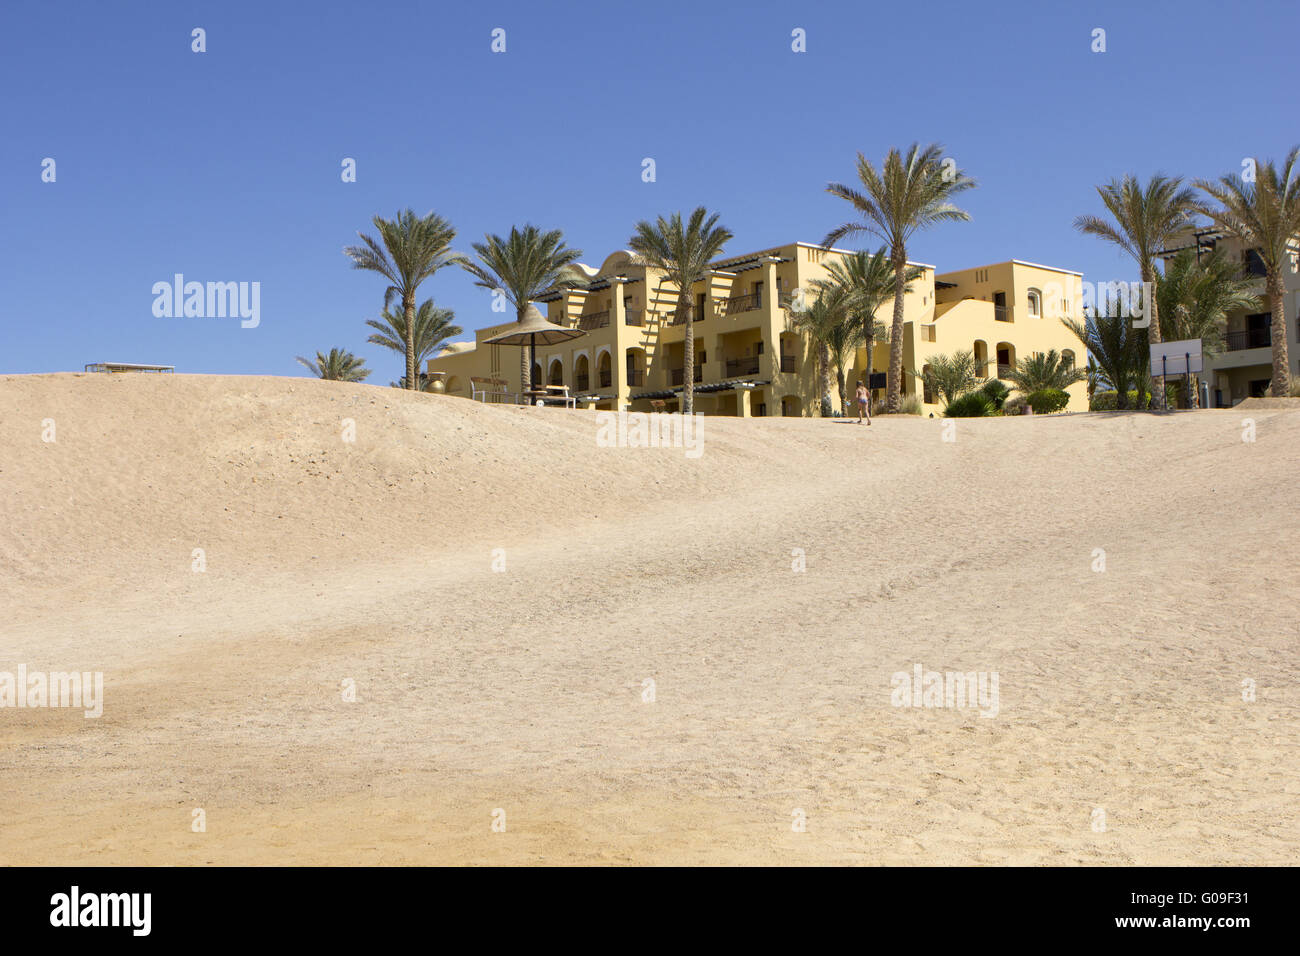 Edificio alla fine di un deserto con palme Foto Stock